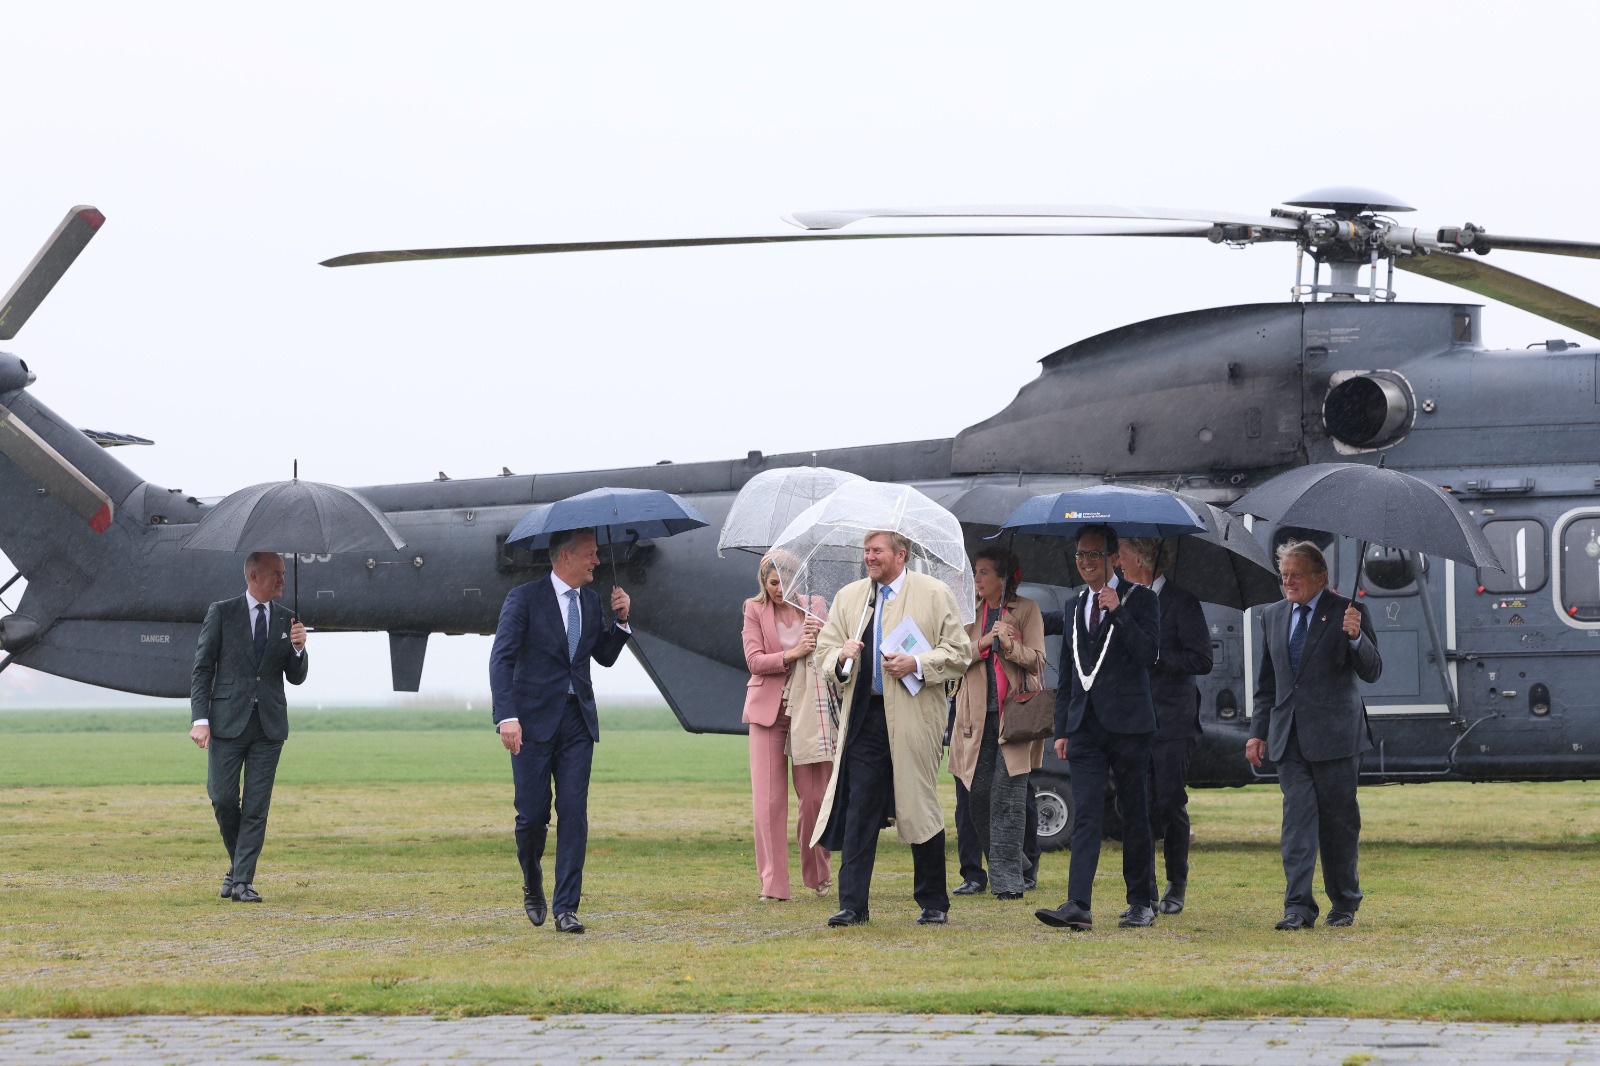 Het Koningspaar stapt uit de helicopter met paraplu's en worden ontvangen door burgemeesters en commissarissen van de Koning